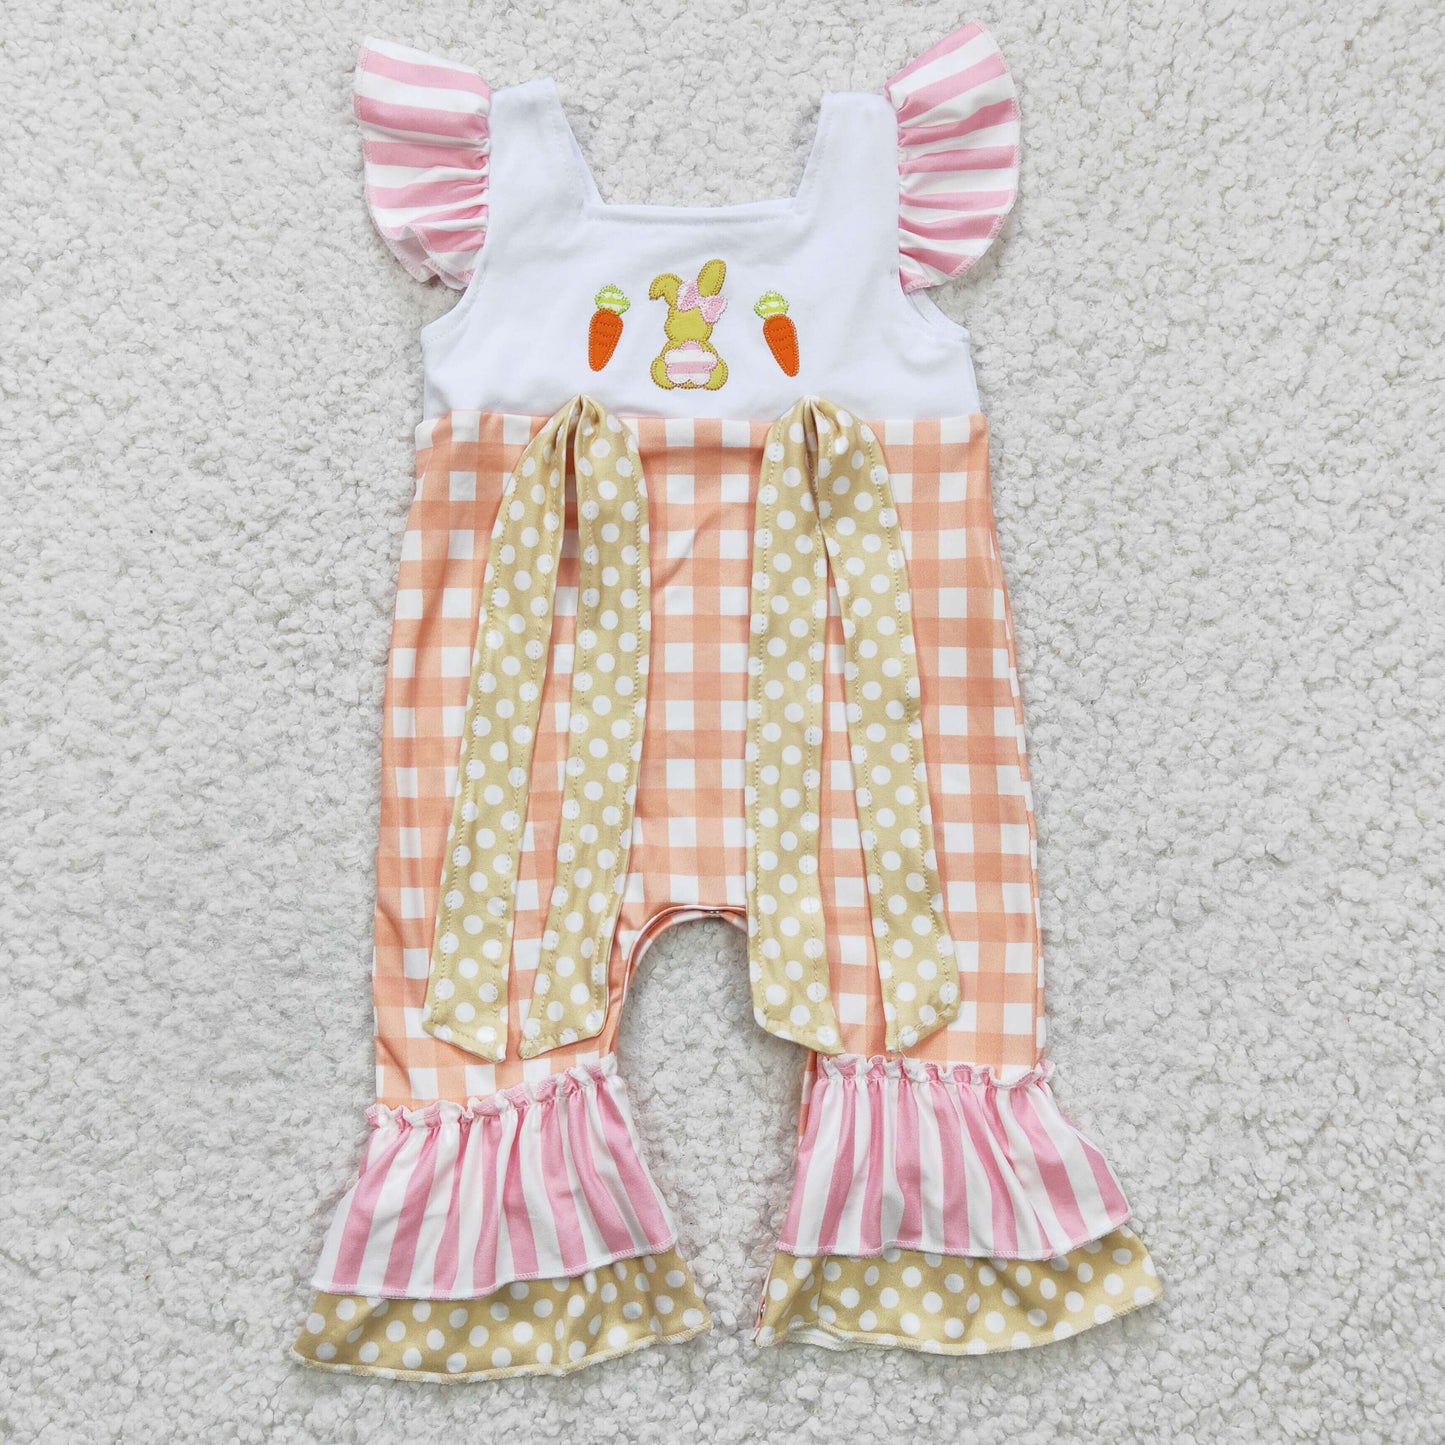 SR0129 Easter Carrot Rabbit Embroidery Girls Romper